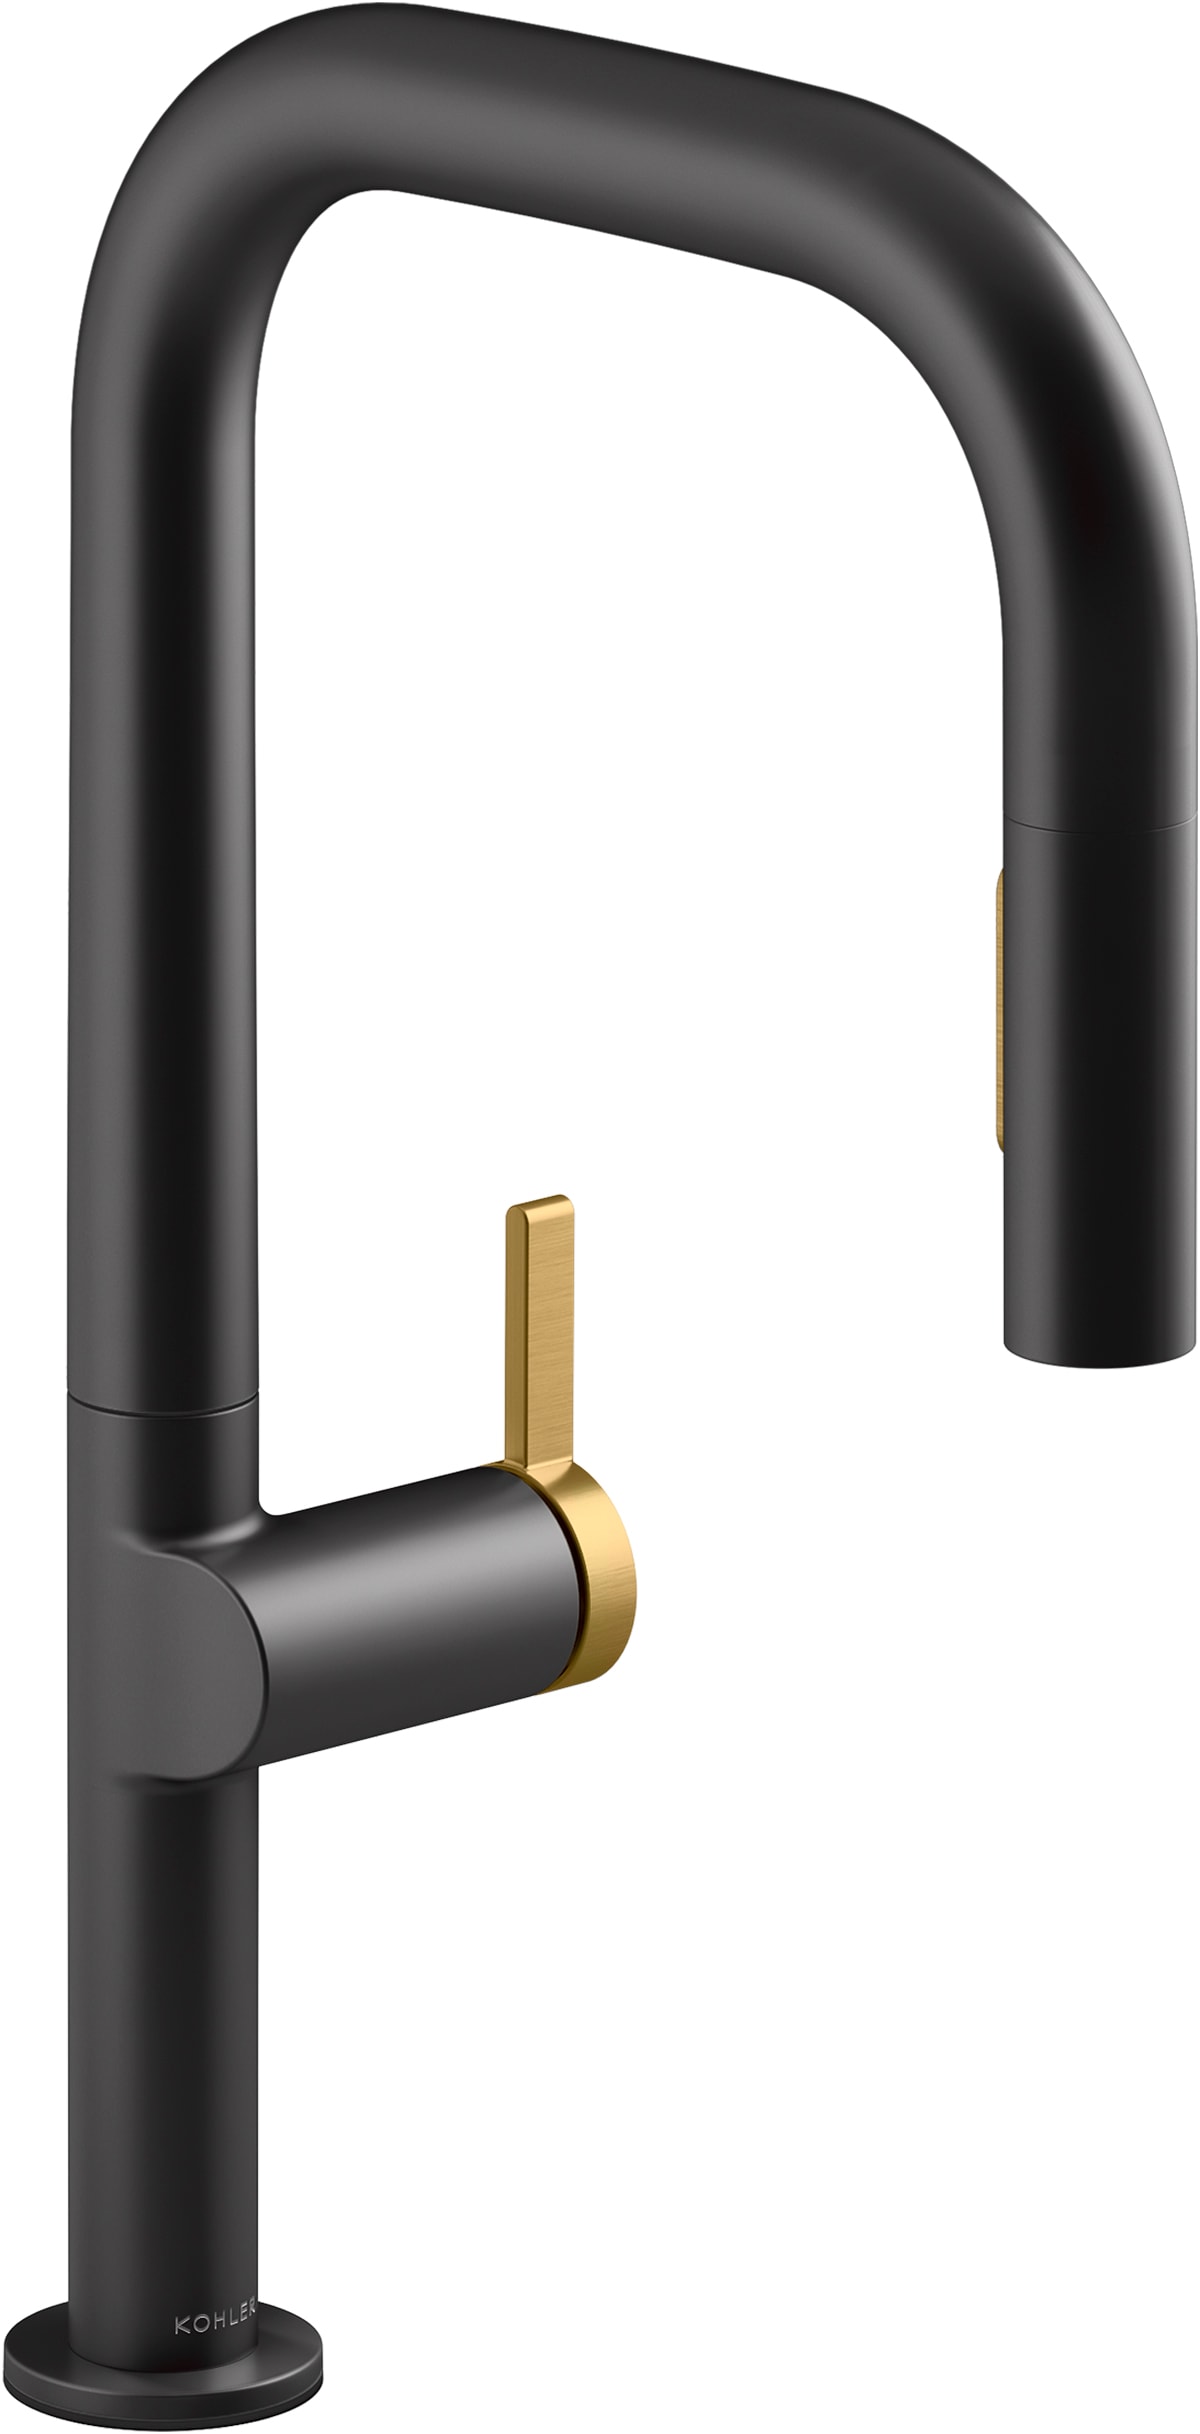 Kohler K-28269-2MB Vibrant Brushed Moderne Brass Components 